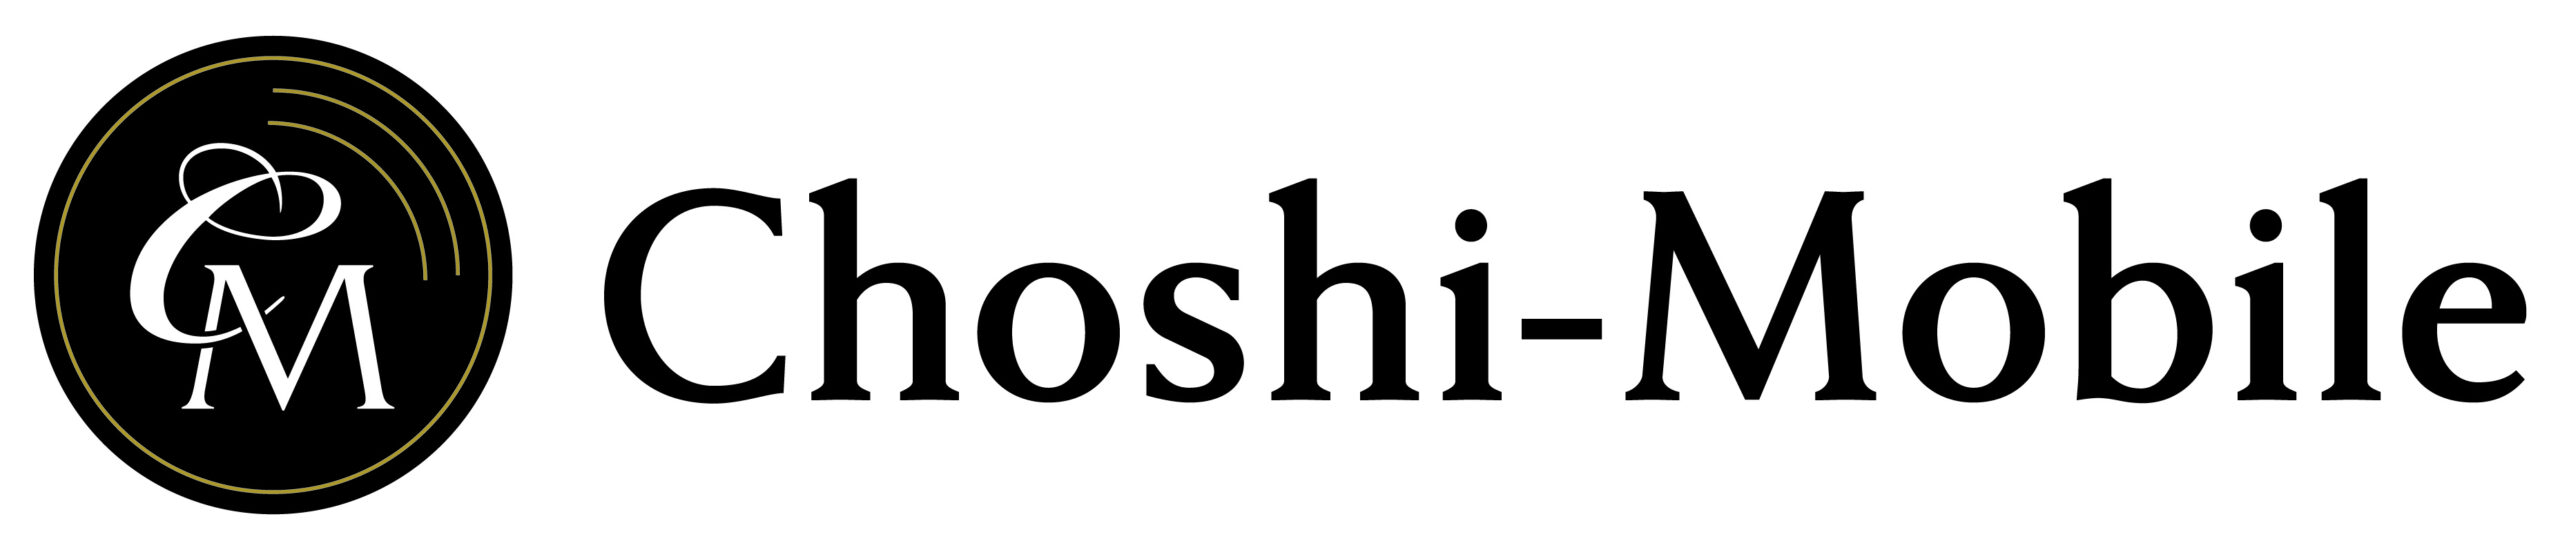 Choshi-Mobile